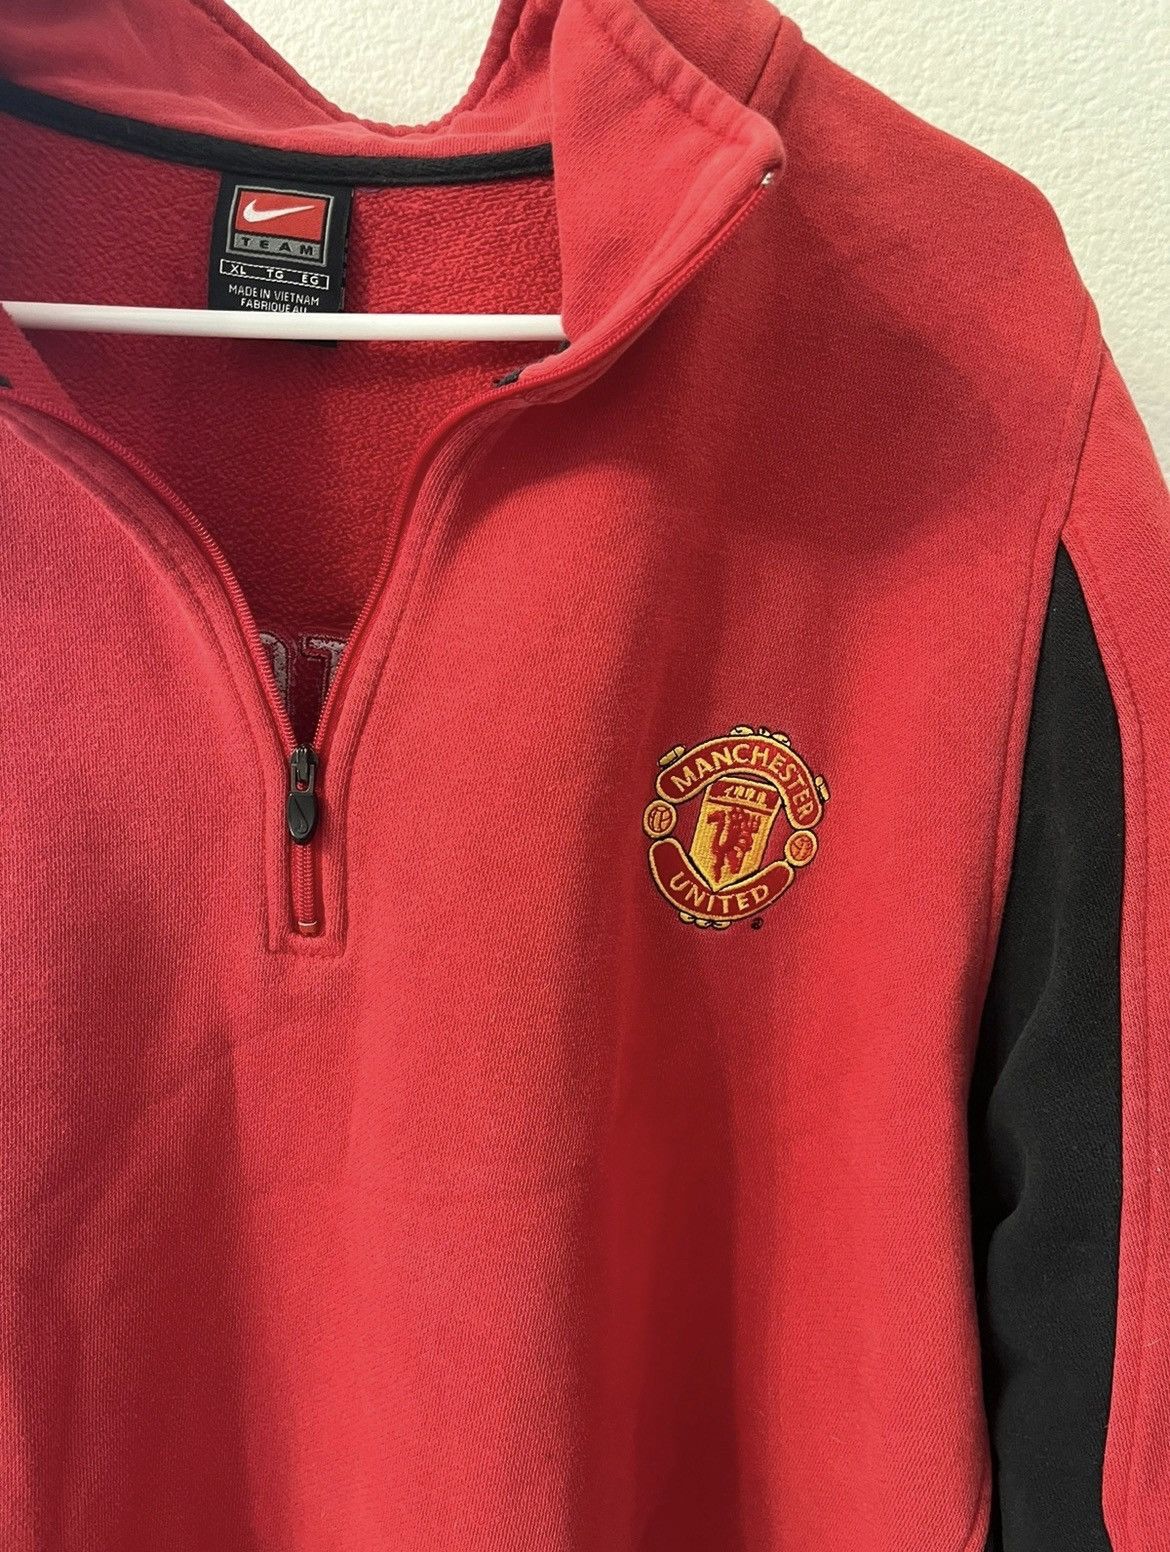 Nike Vintage Nike “Manchester United” Jacket Size US XL / EU 56 / 4 - 5 Thumbnail